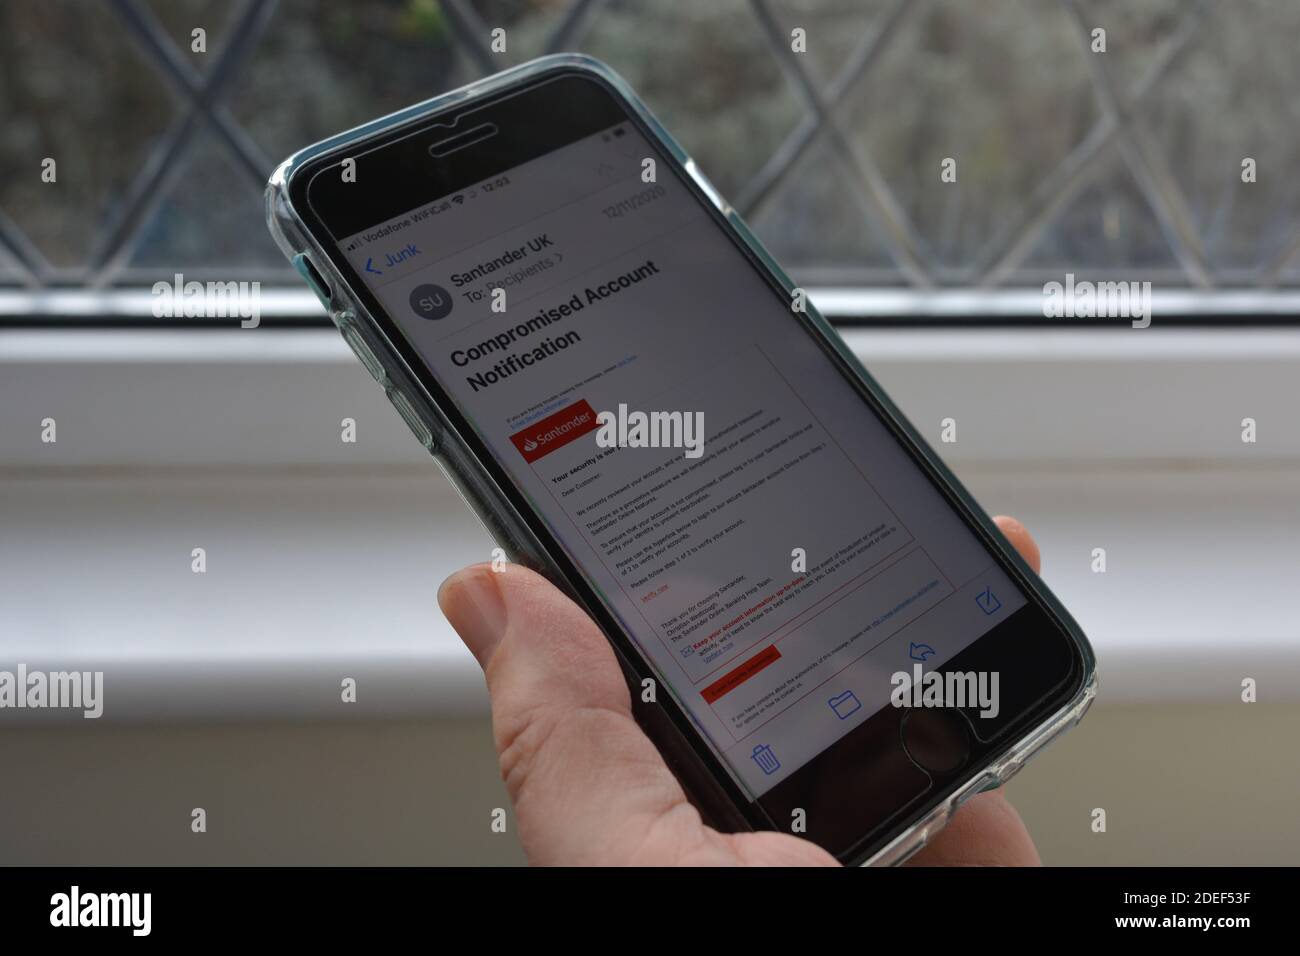 Telefono cellulare in mano alla donna con un messaggio e-mail di phishing/truffa, che si suppone provenga dalla banca Santander, visualizzato sullo schermo Foto Stock